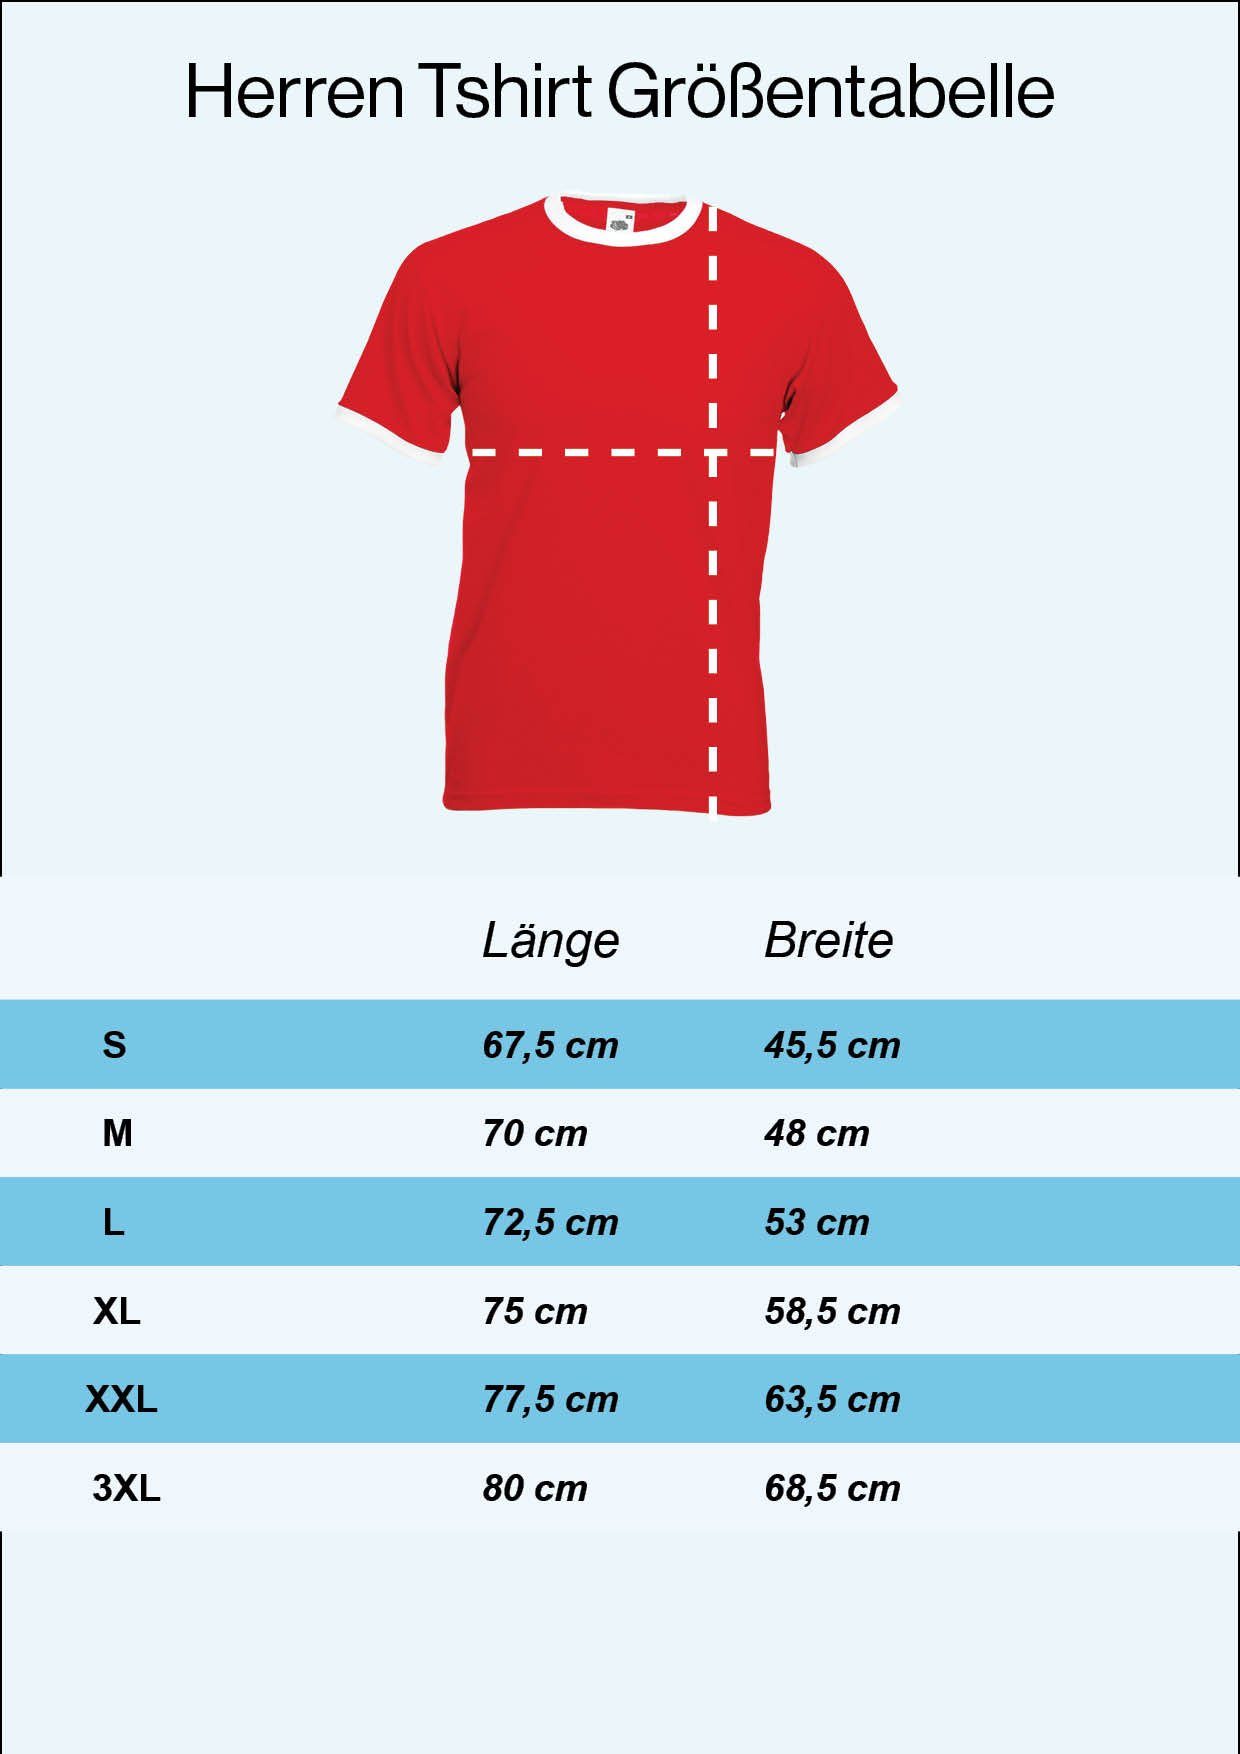 Herren Tschechische im T-Shirt trendigem Rot Fußball T-Shirt Look Republik Motiv Youth mit Trikot Designz